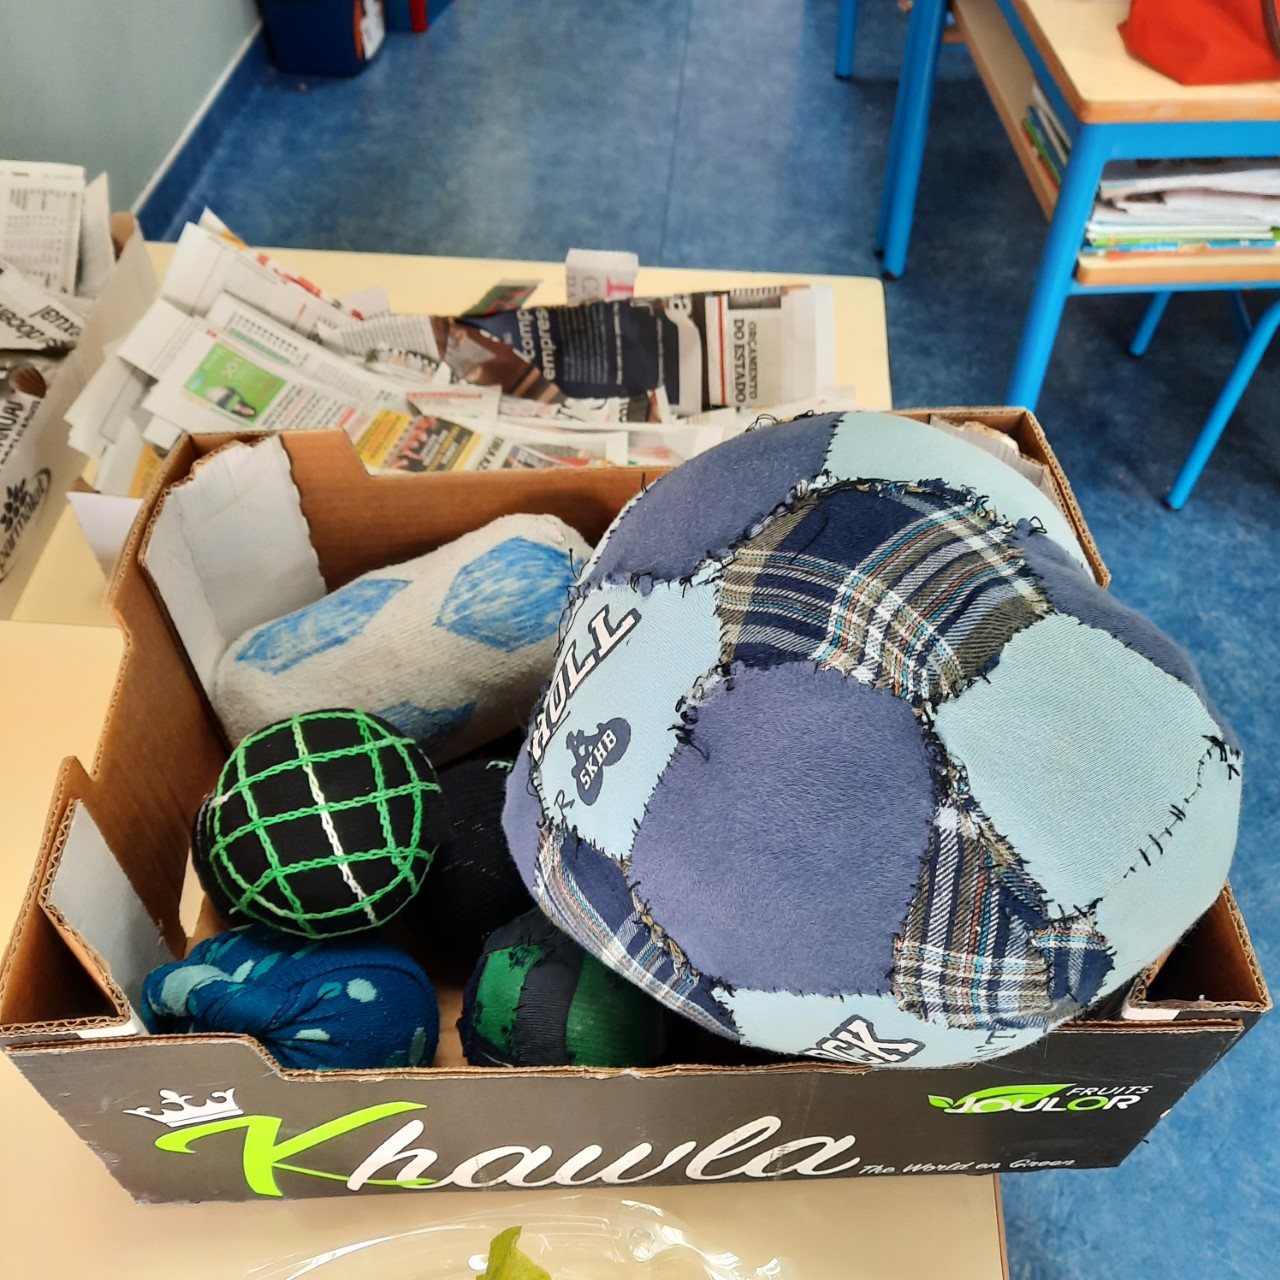 Bolas de trapos criadas em família para substituir as tampas de plástico que, os alunos usavam nas suas brincadeiras no recreio.